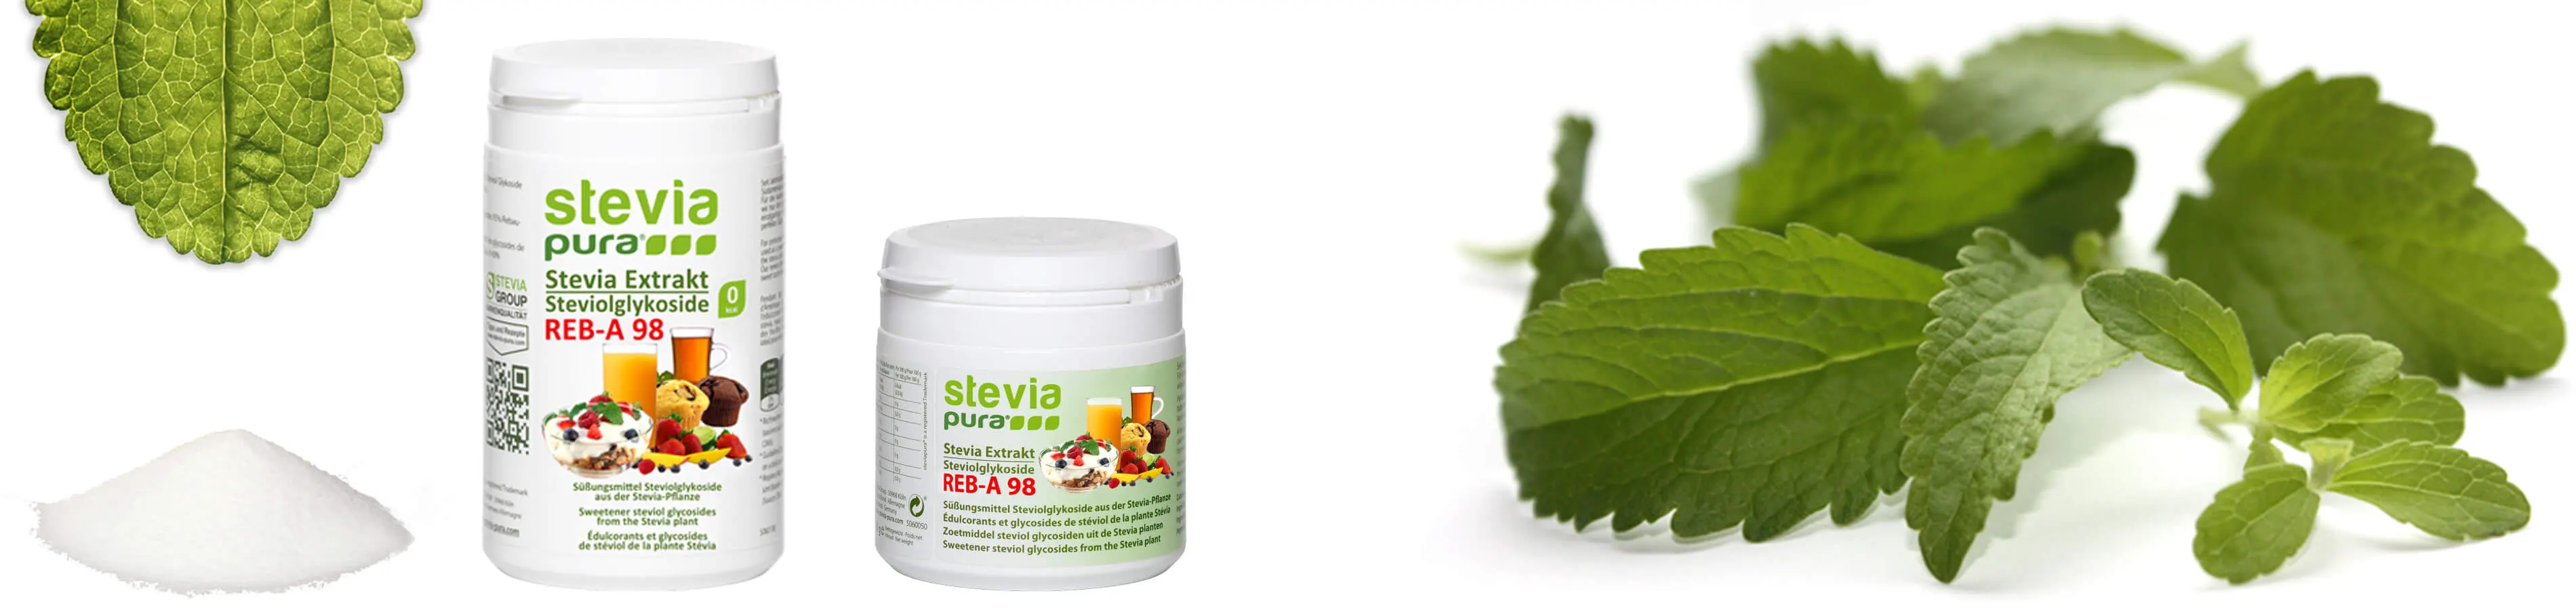 Steviolglycosiden zijn de zoete bestanddelen van de Steviaplant. Pure, onvervalste Stevia poeder wordt gebruikt als suikervervanger of zoetstof.